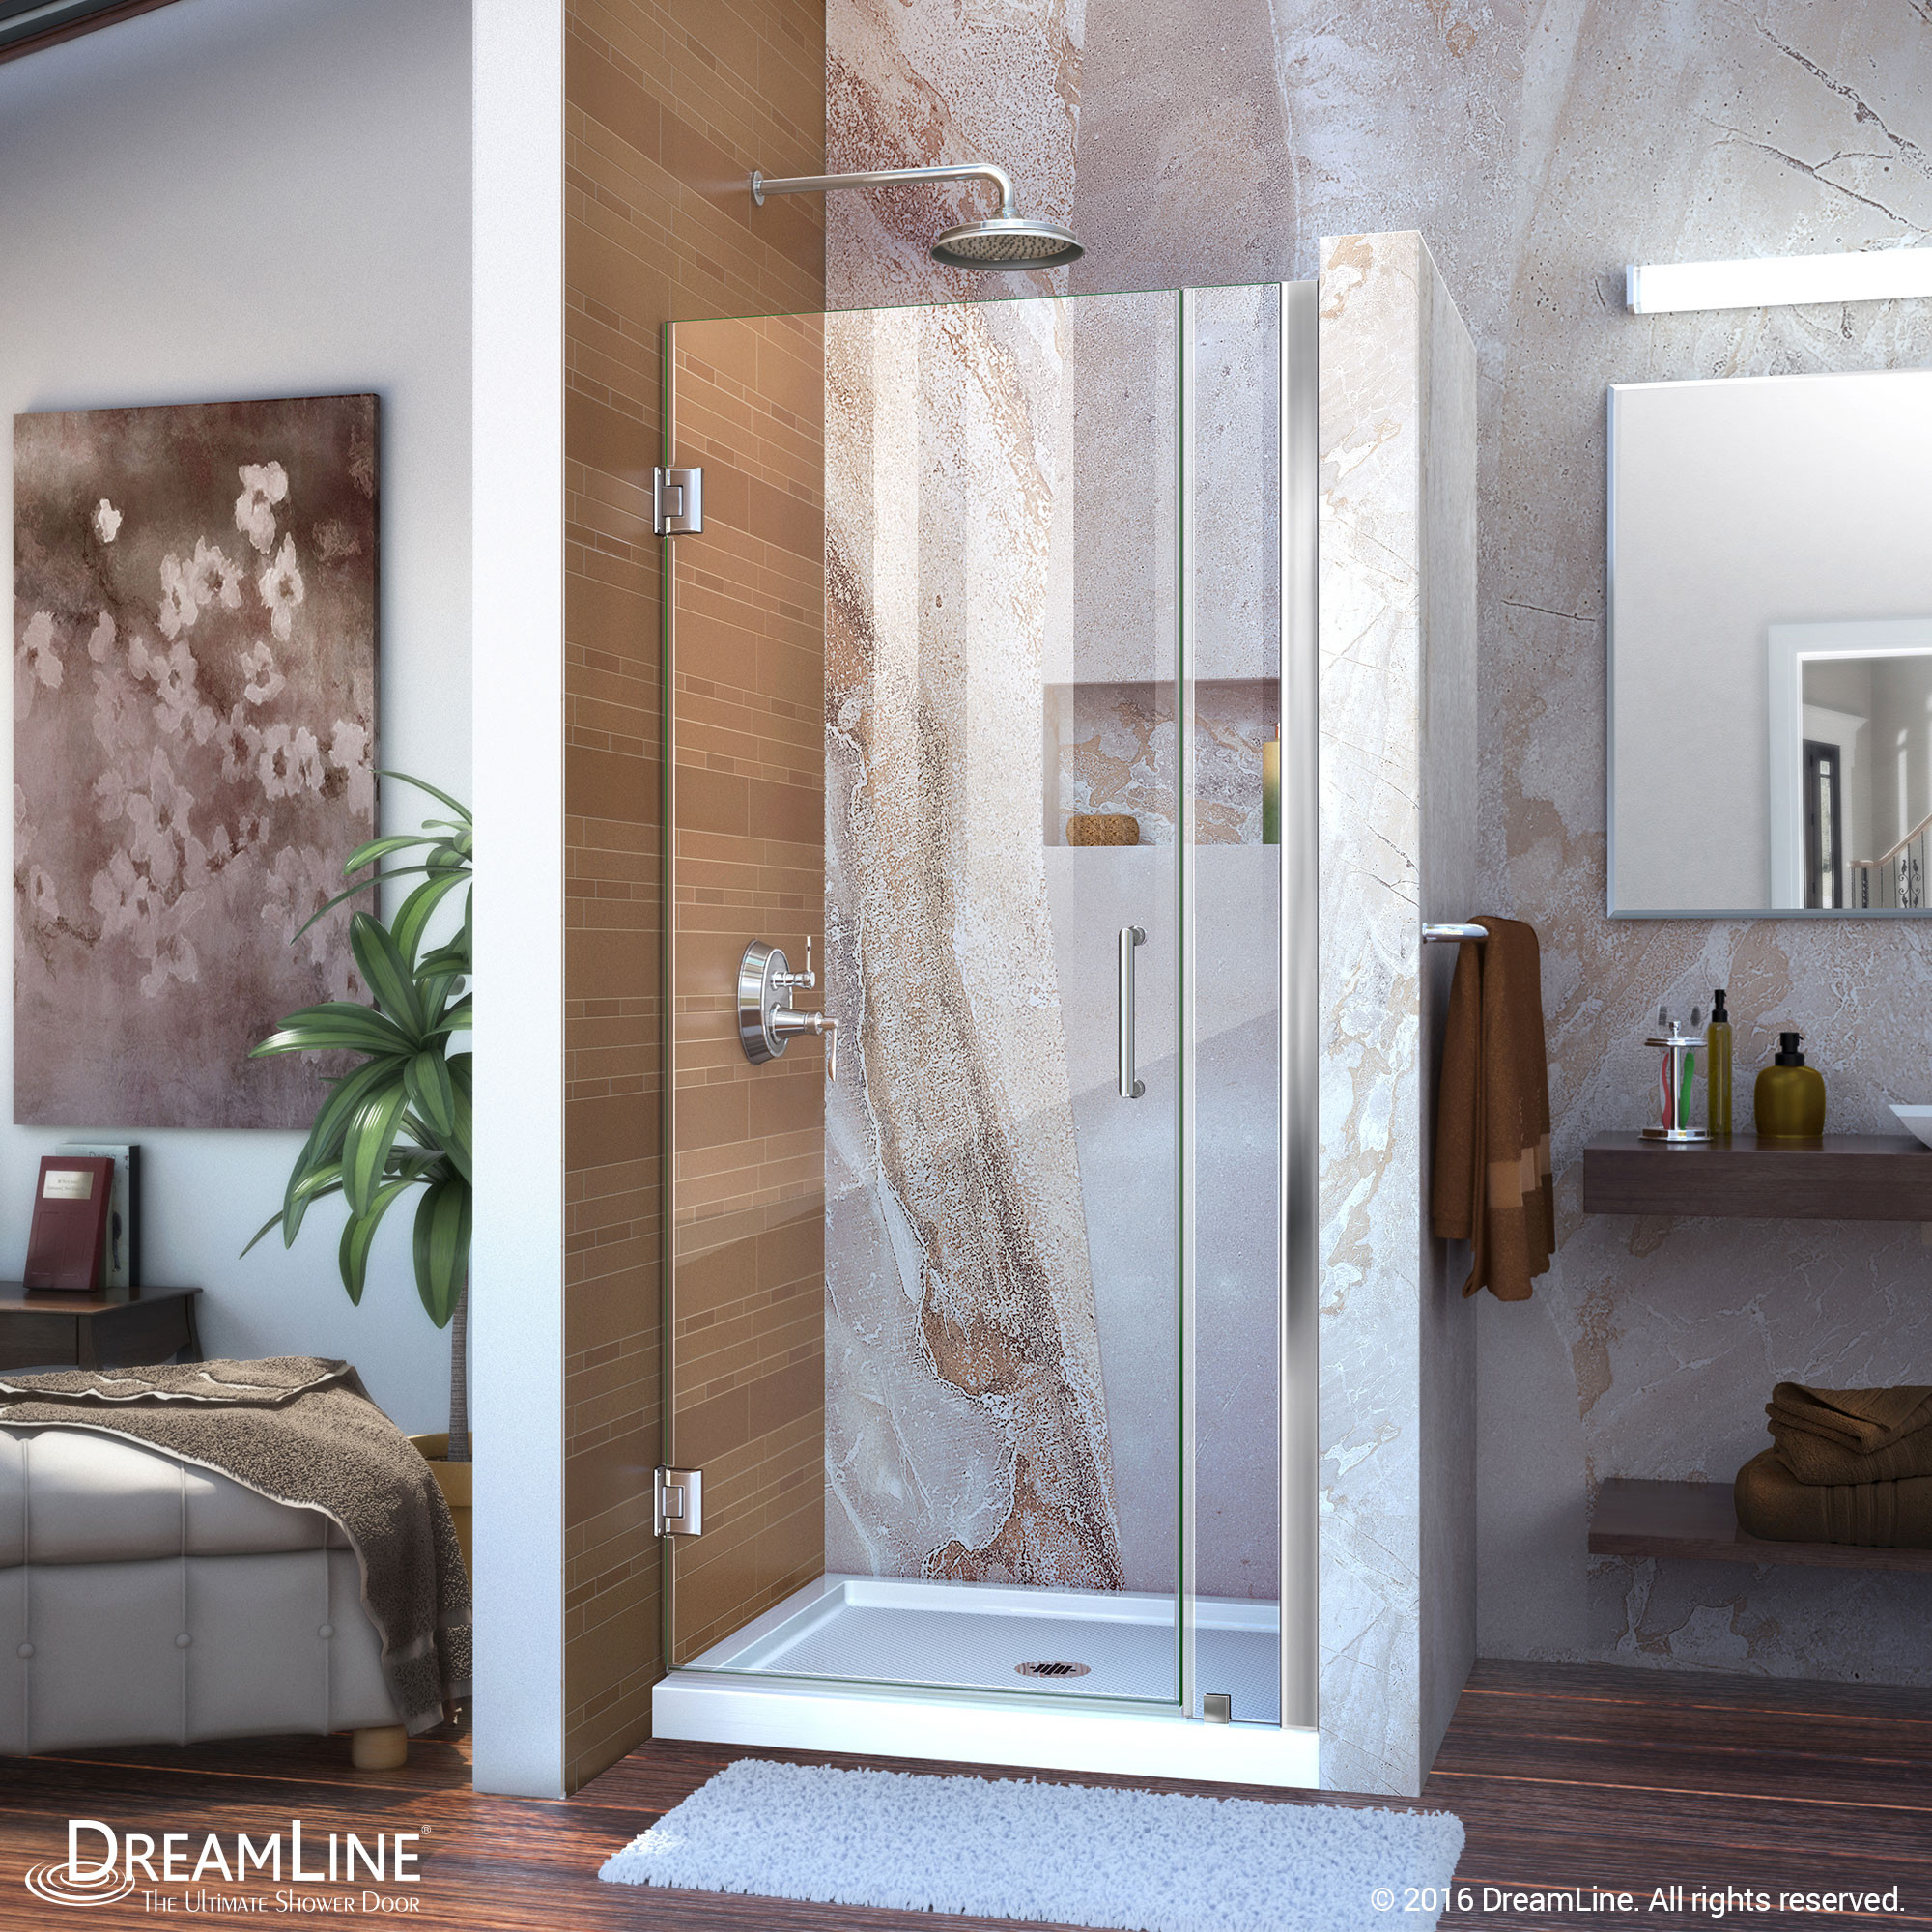 DreamLine SHDR-20367210 Chrome Frameless 36-37" Adjustable Shower Door